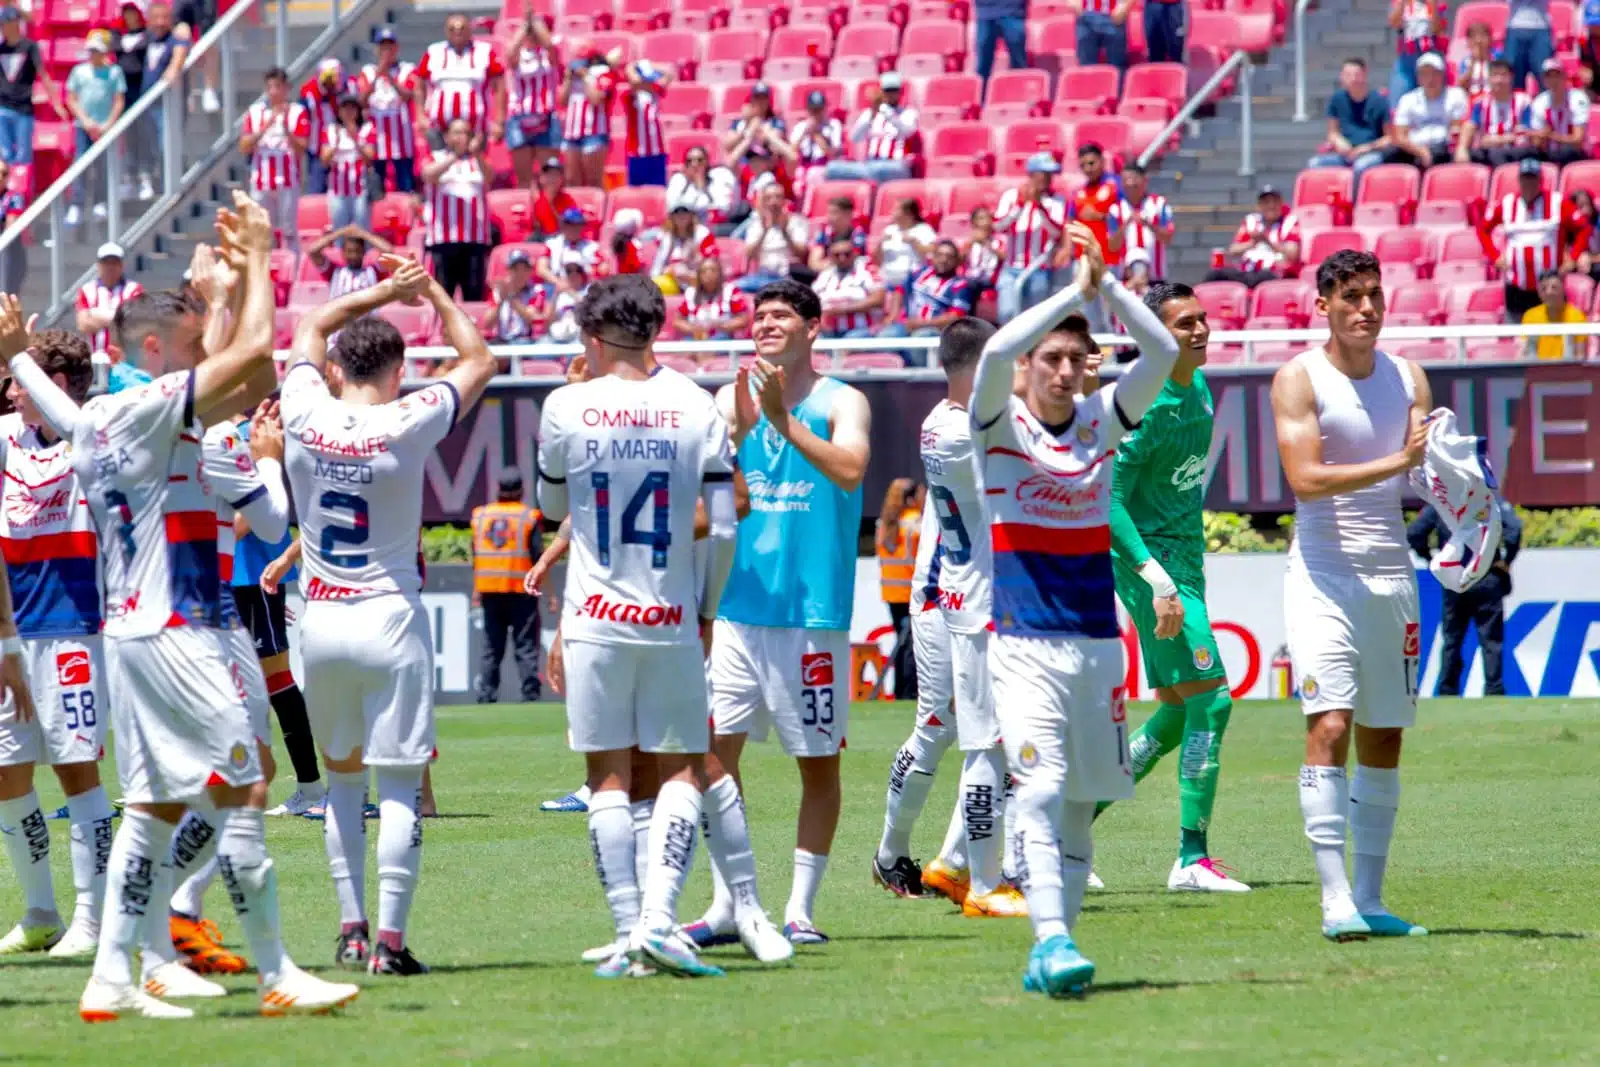 ¡Campeones! Chivas vence al Athletic Bilbao y Paunovic conquista el primer título con el “rebaño sagrado”